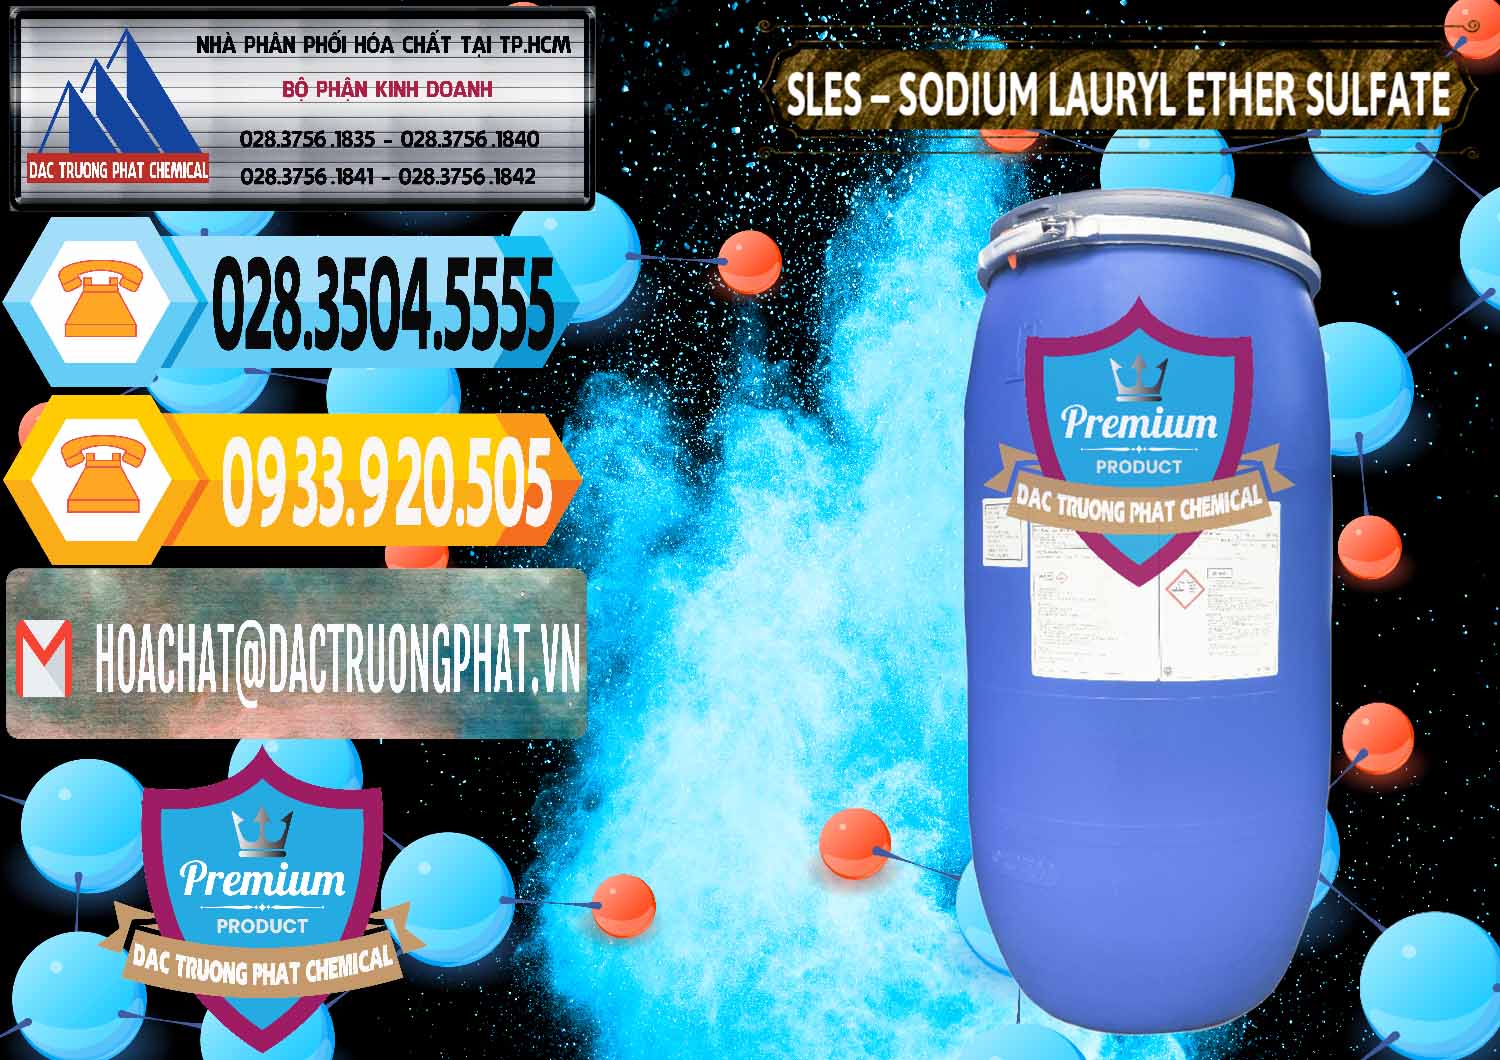 Chuyên bán _ cung ứng Chất Tạo Bọt Sles - Sodium Lauryl Ether Sulphate Kao Indonesia - 0046 - Đơn vị phân phối _ bán hóa chất tại TP.HCM - hoachattayrua.net